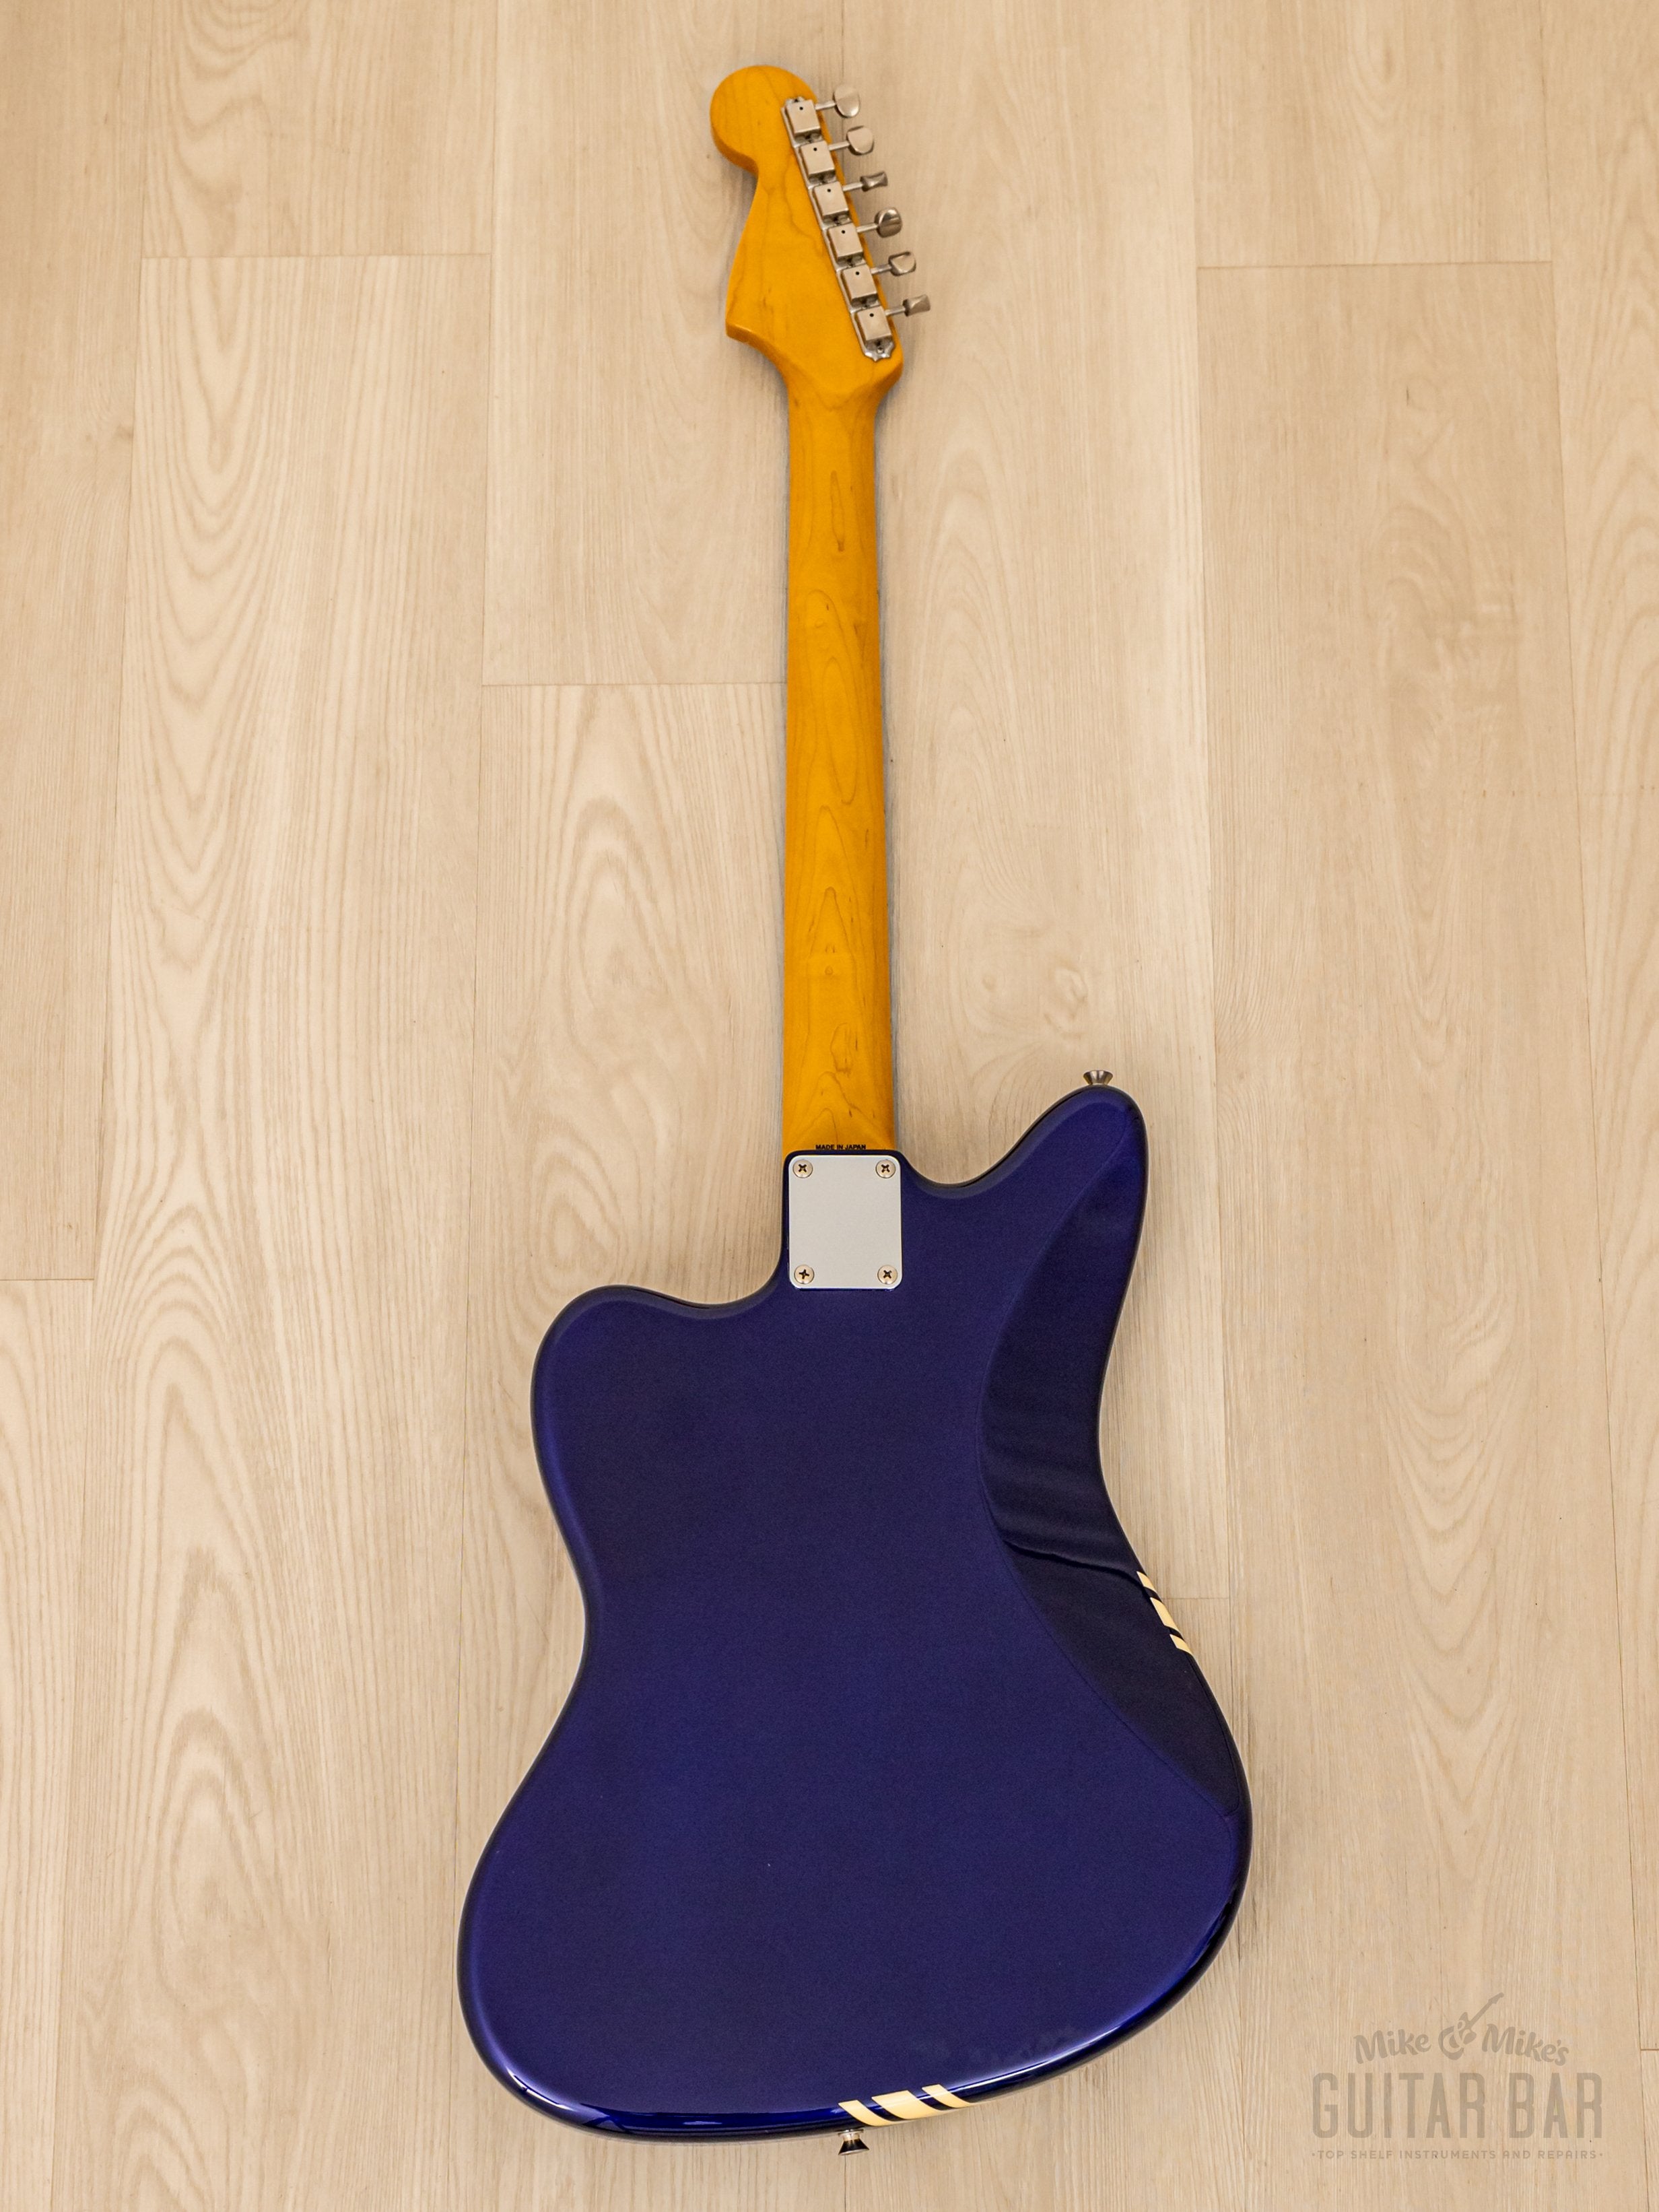 2010 Fender Jazzmaster Competition JM66 Jupiter Blue Offset Guitar 